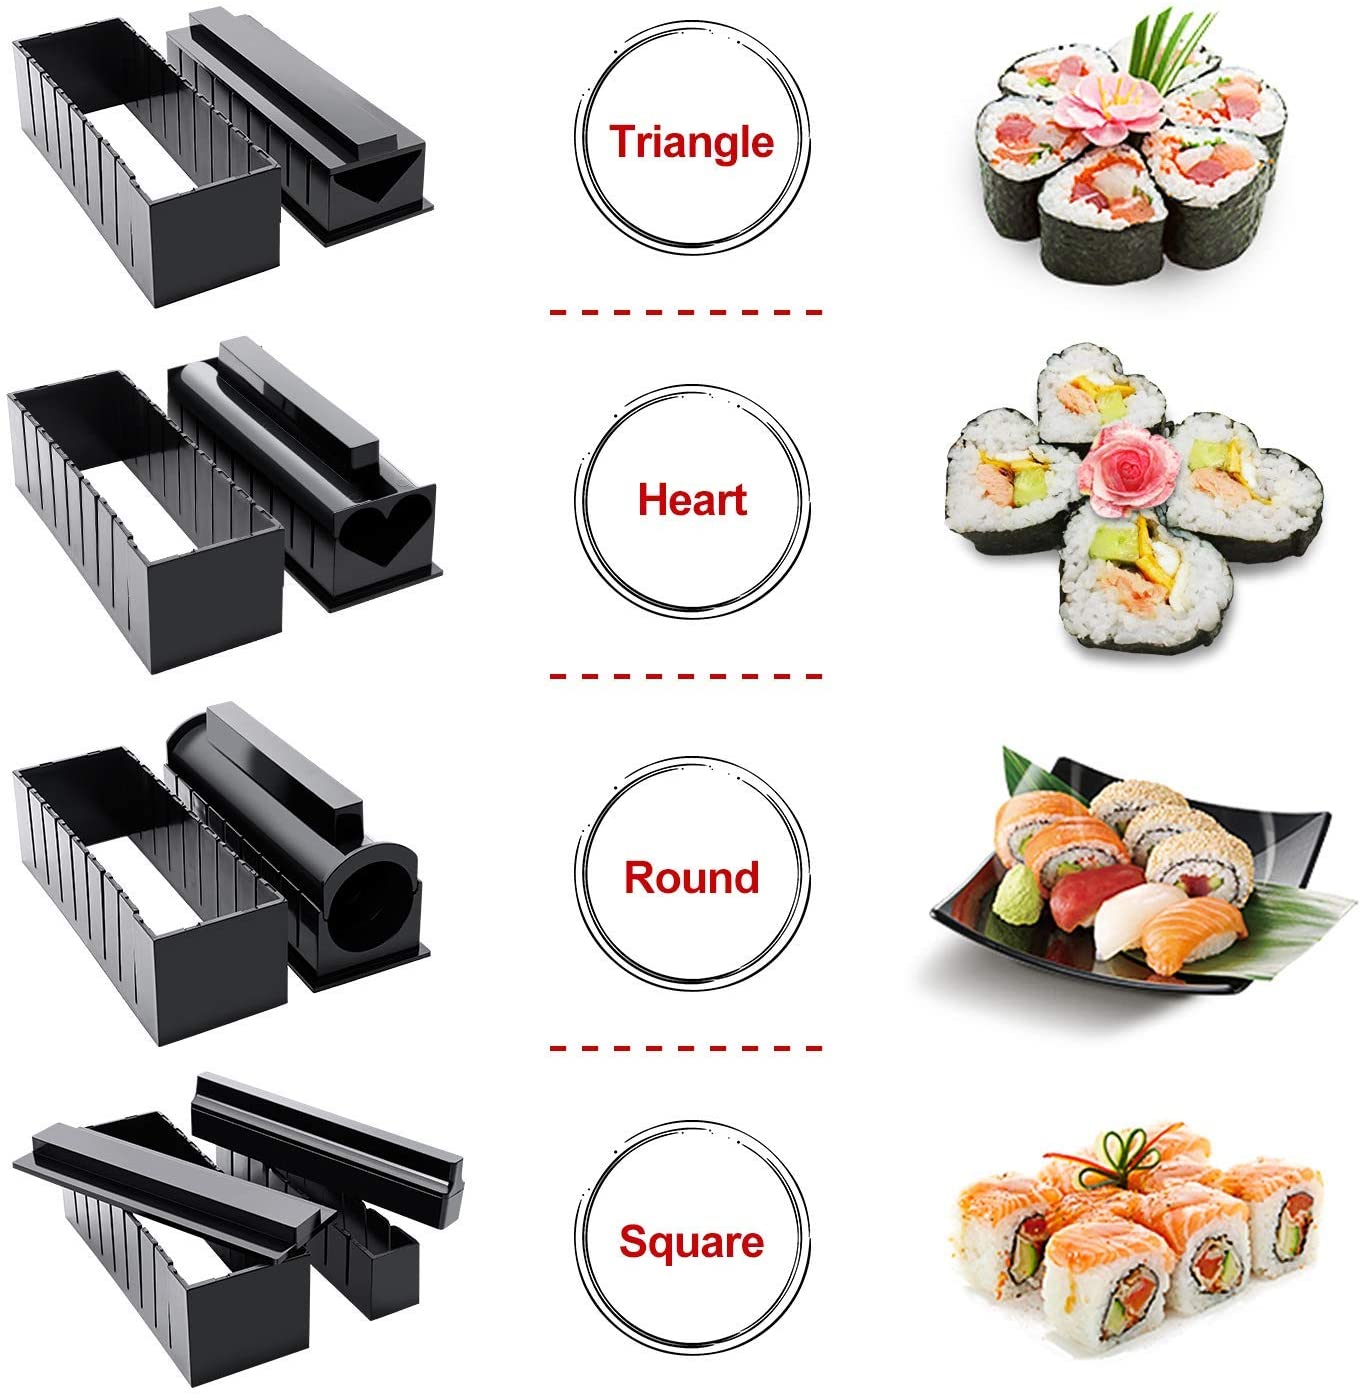 DIY sushi set tool to easily make various shapes of sushi